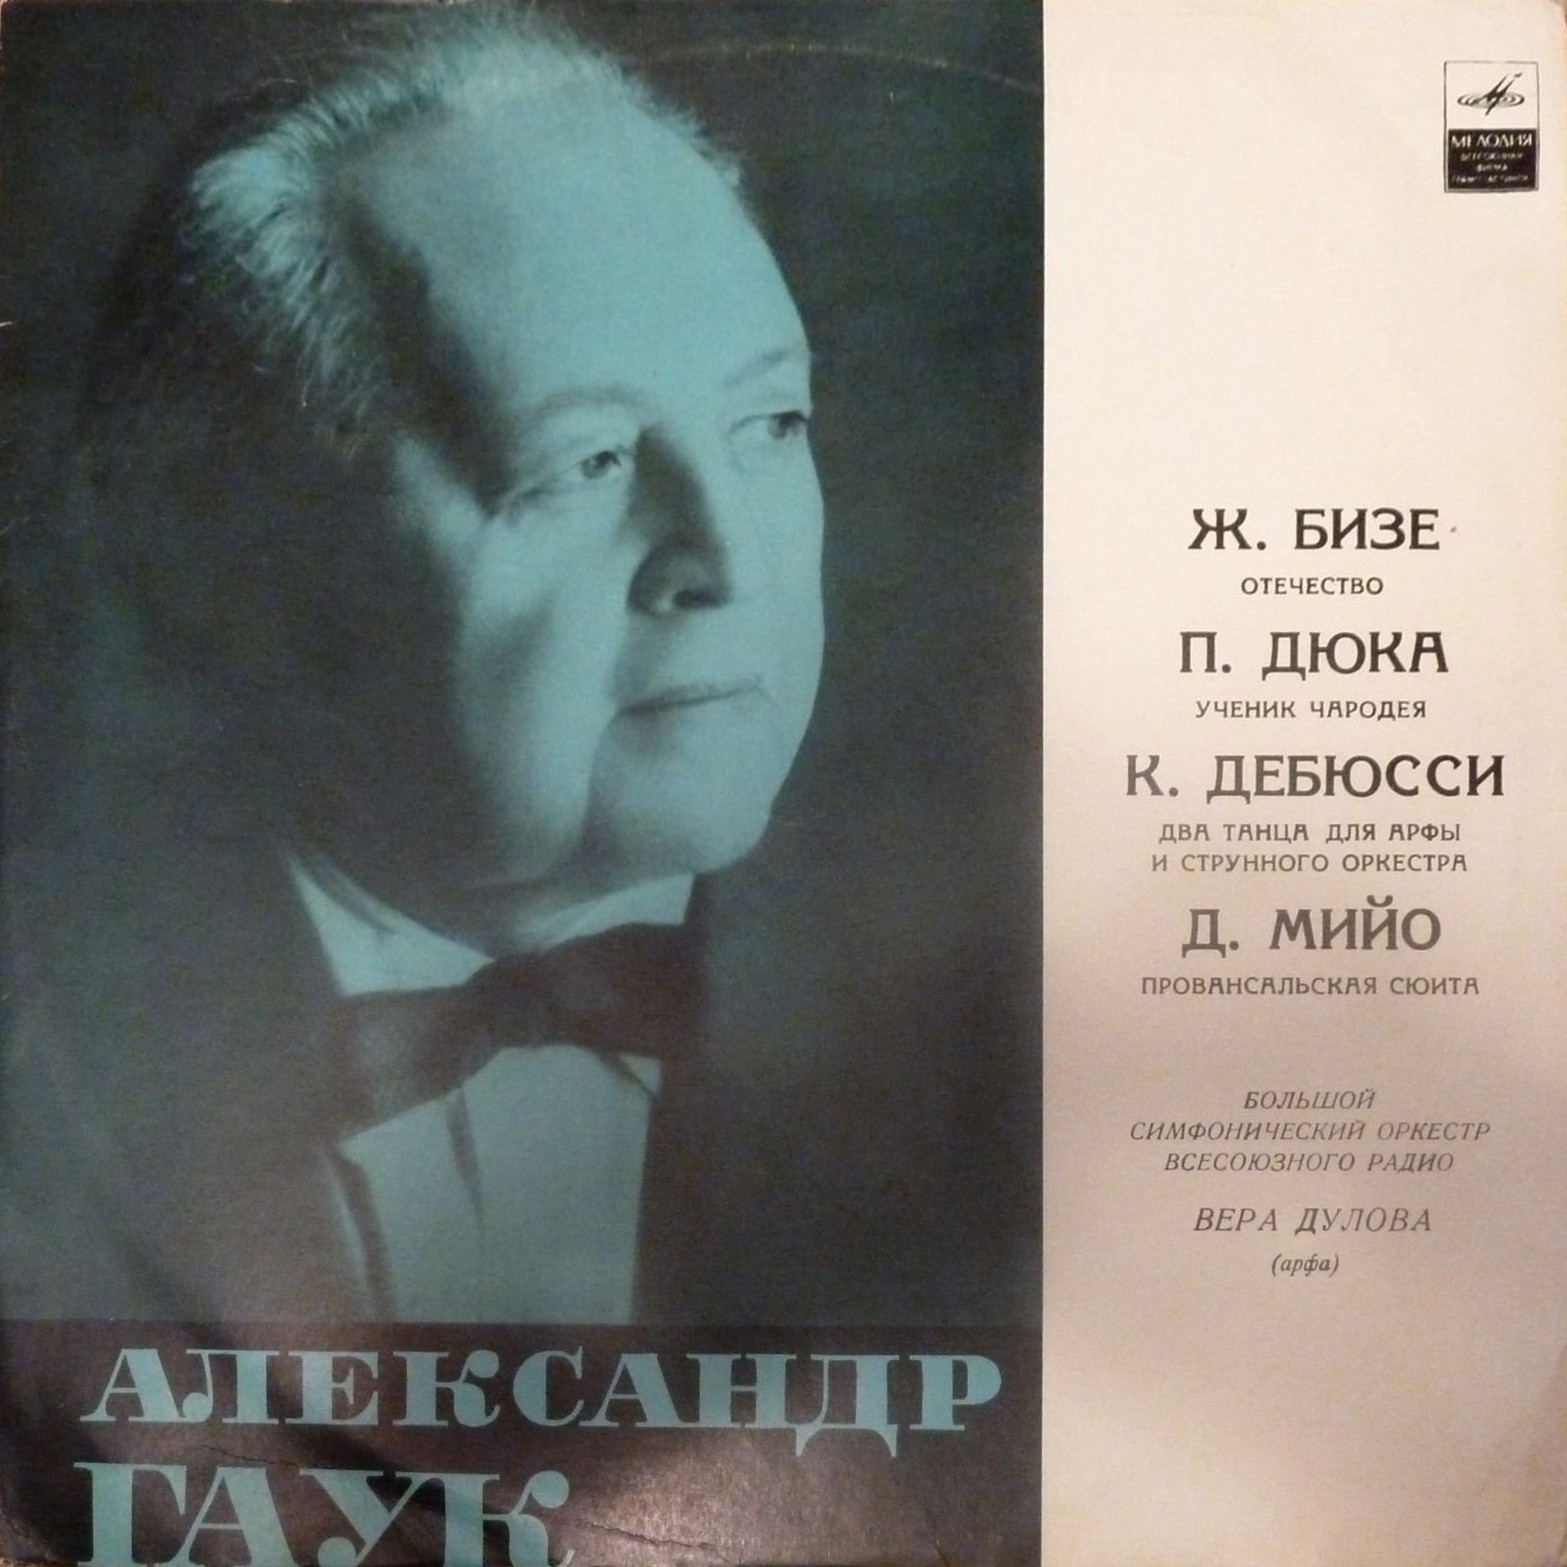 ДИРИЖЕР АЛЕКСАНДР ГАУК (1893—1963) — архивные записи